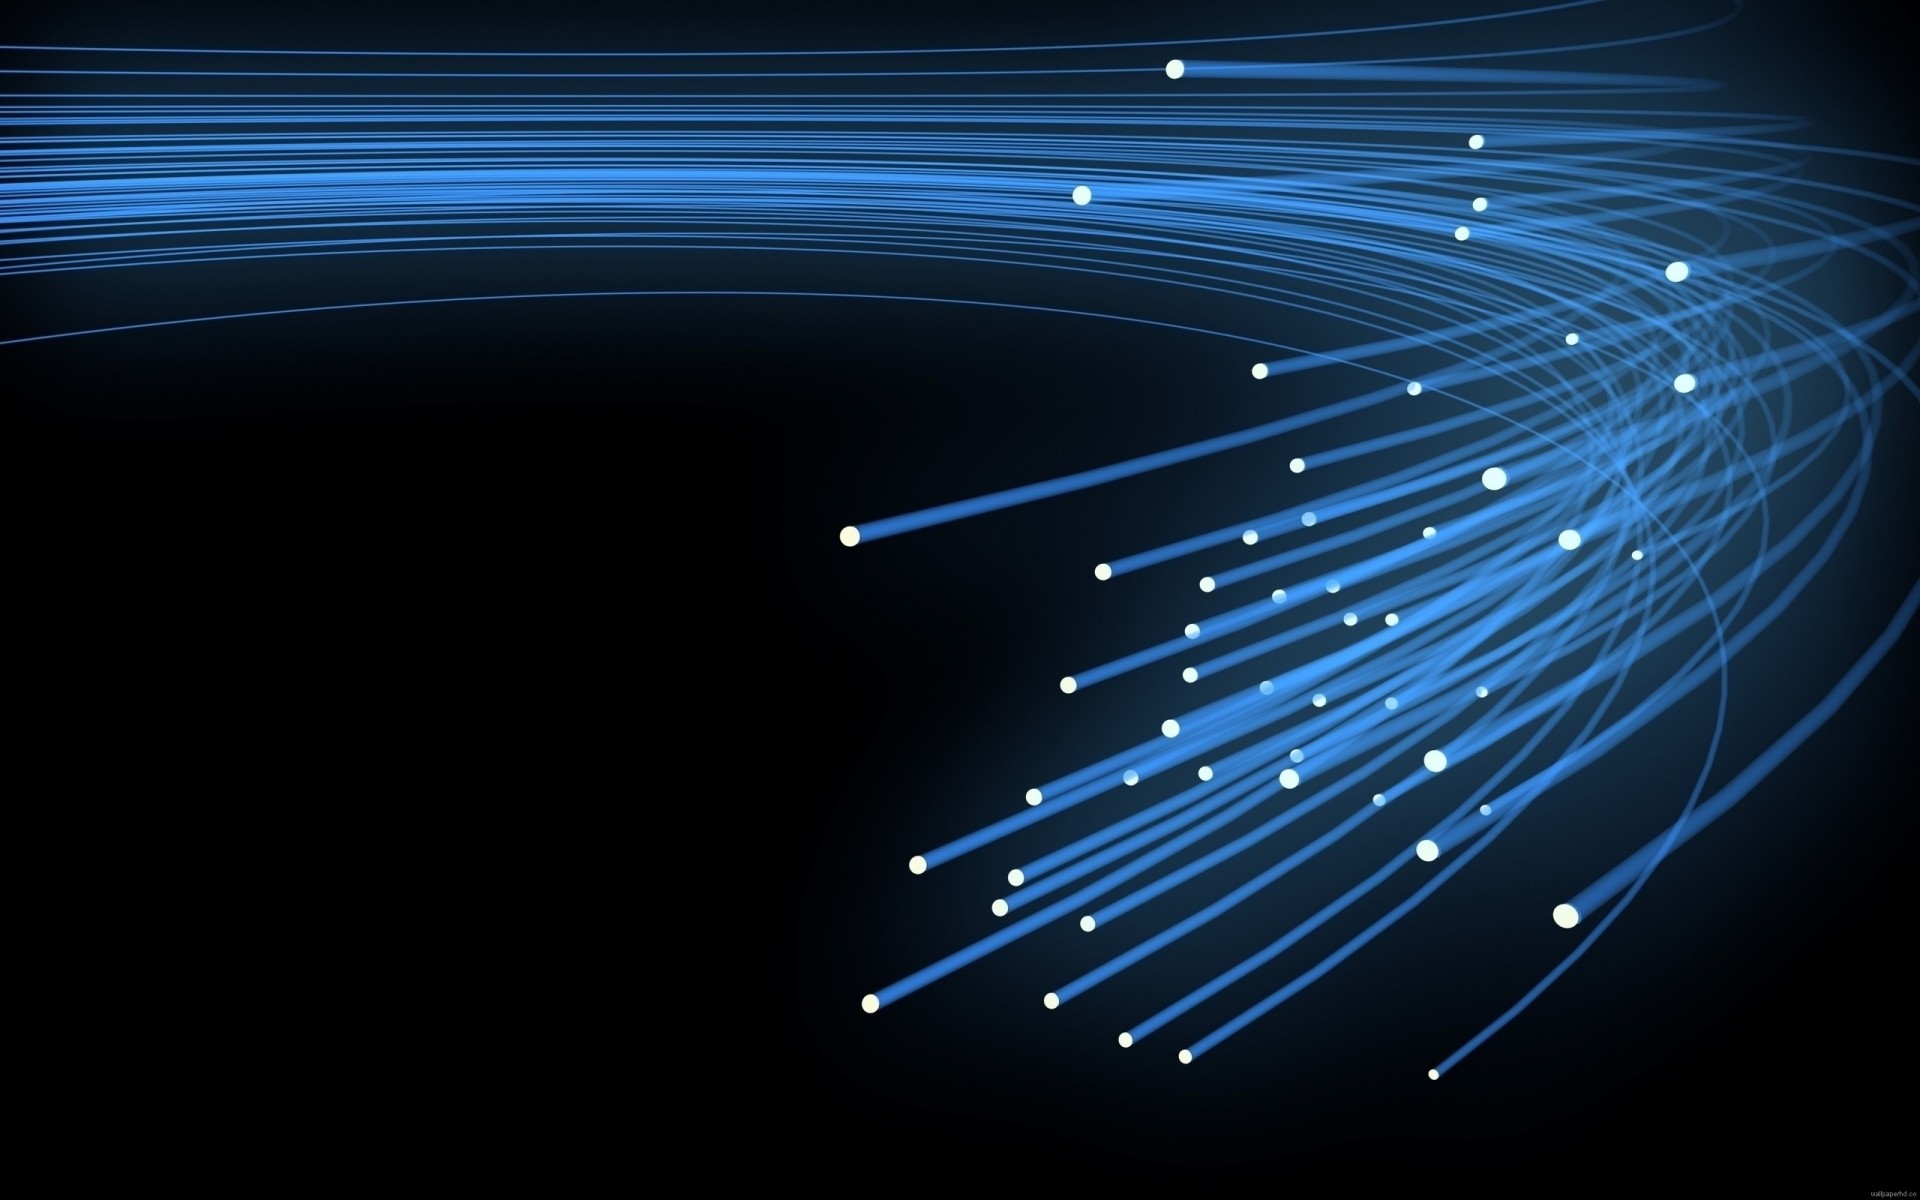 цифровая техника и по движения аннотация свет наука темный размытость люминесценция рабочего стола технология график яркий энергии иллюстрация интернет кабель синий